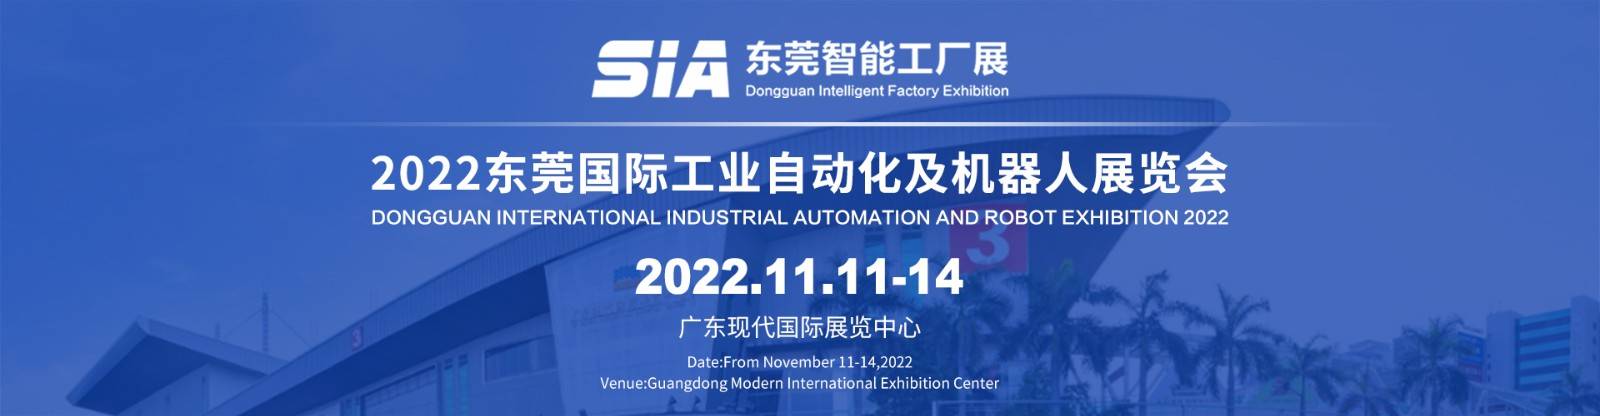 工业自动化展 | 智能装备及工业机器人展 |2022东莞智能装备展会